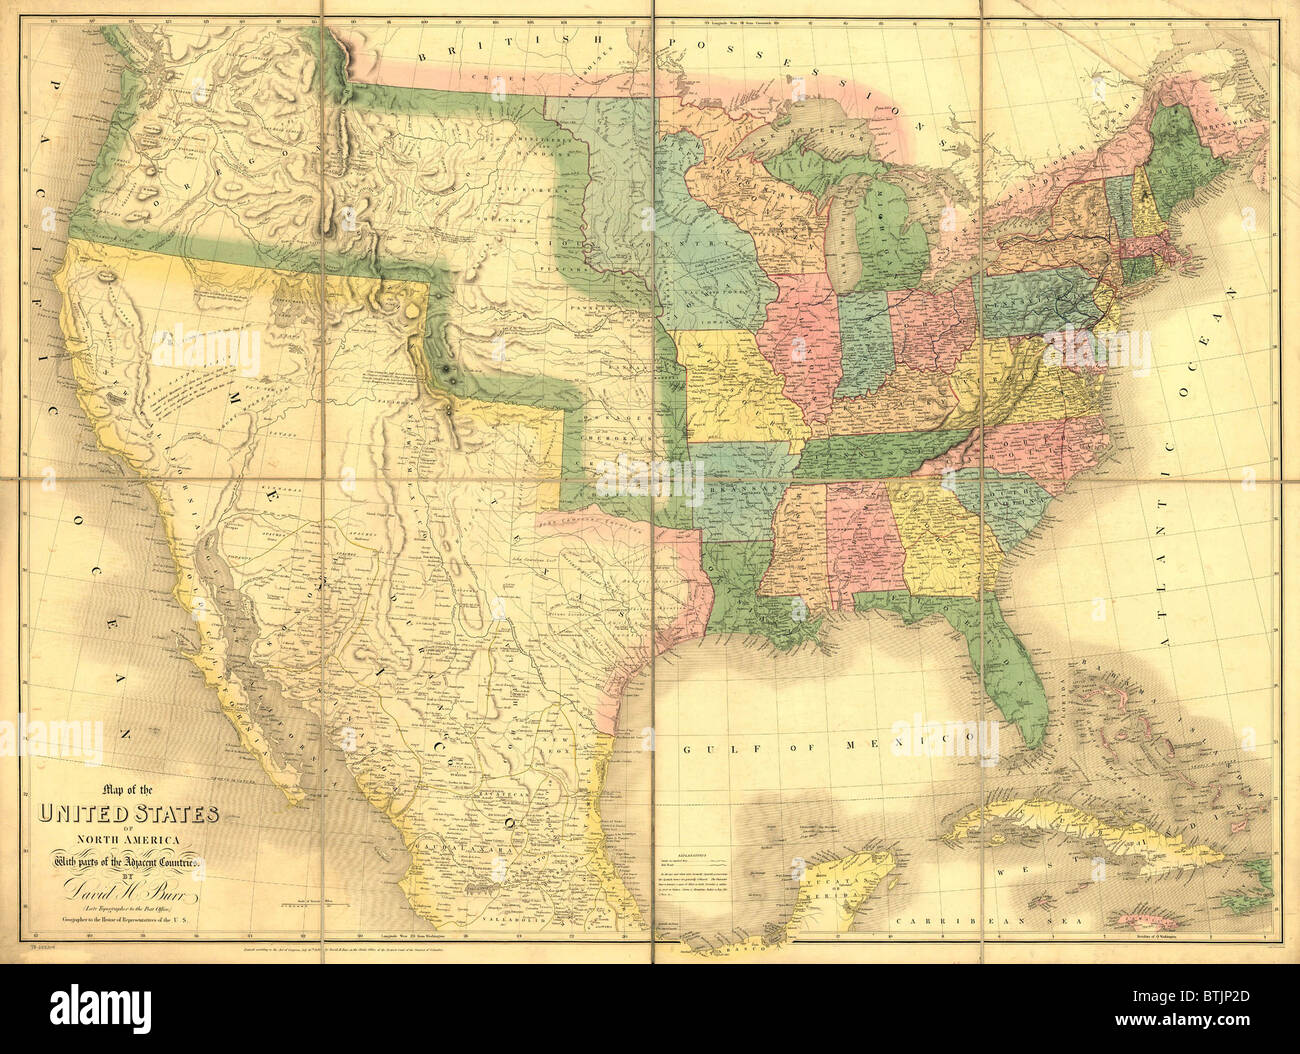 1839 Carte montrant la frontière mexicaine-nous avant la guerre du Mexique et l'annexion de terres qui nous est maintenant de nous membres de Californie, Arizona, Nouveau-Mexique, Nevada, Colorado, Utah et au Texas. Banque D'Images